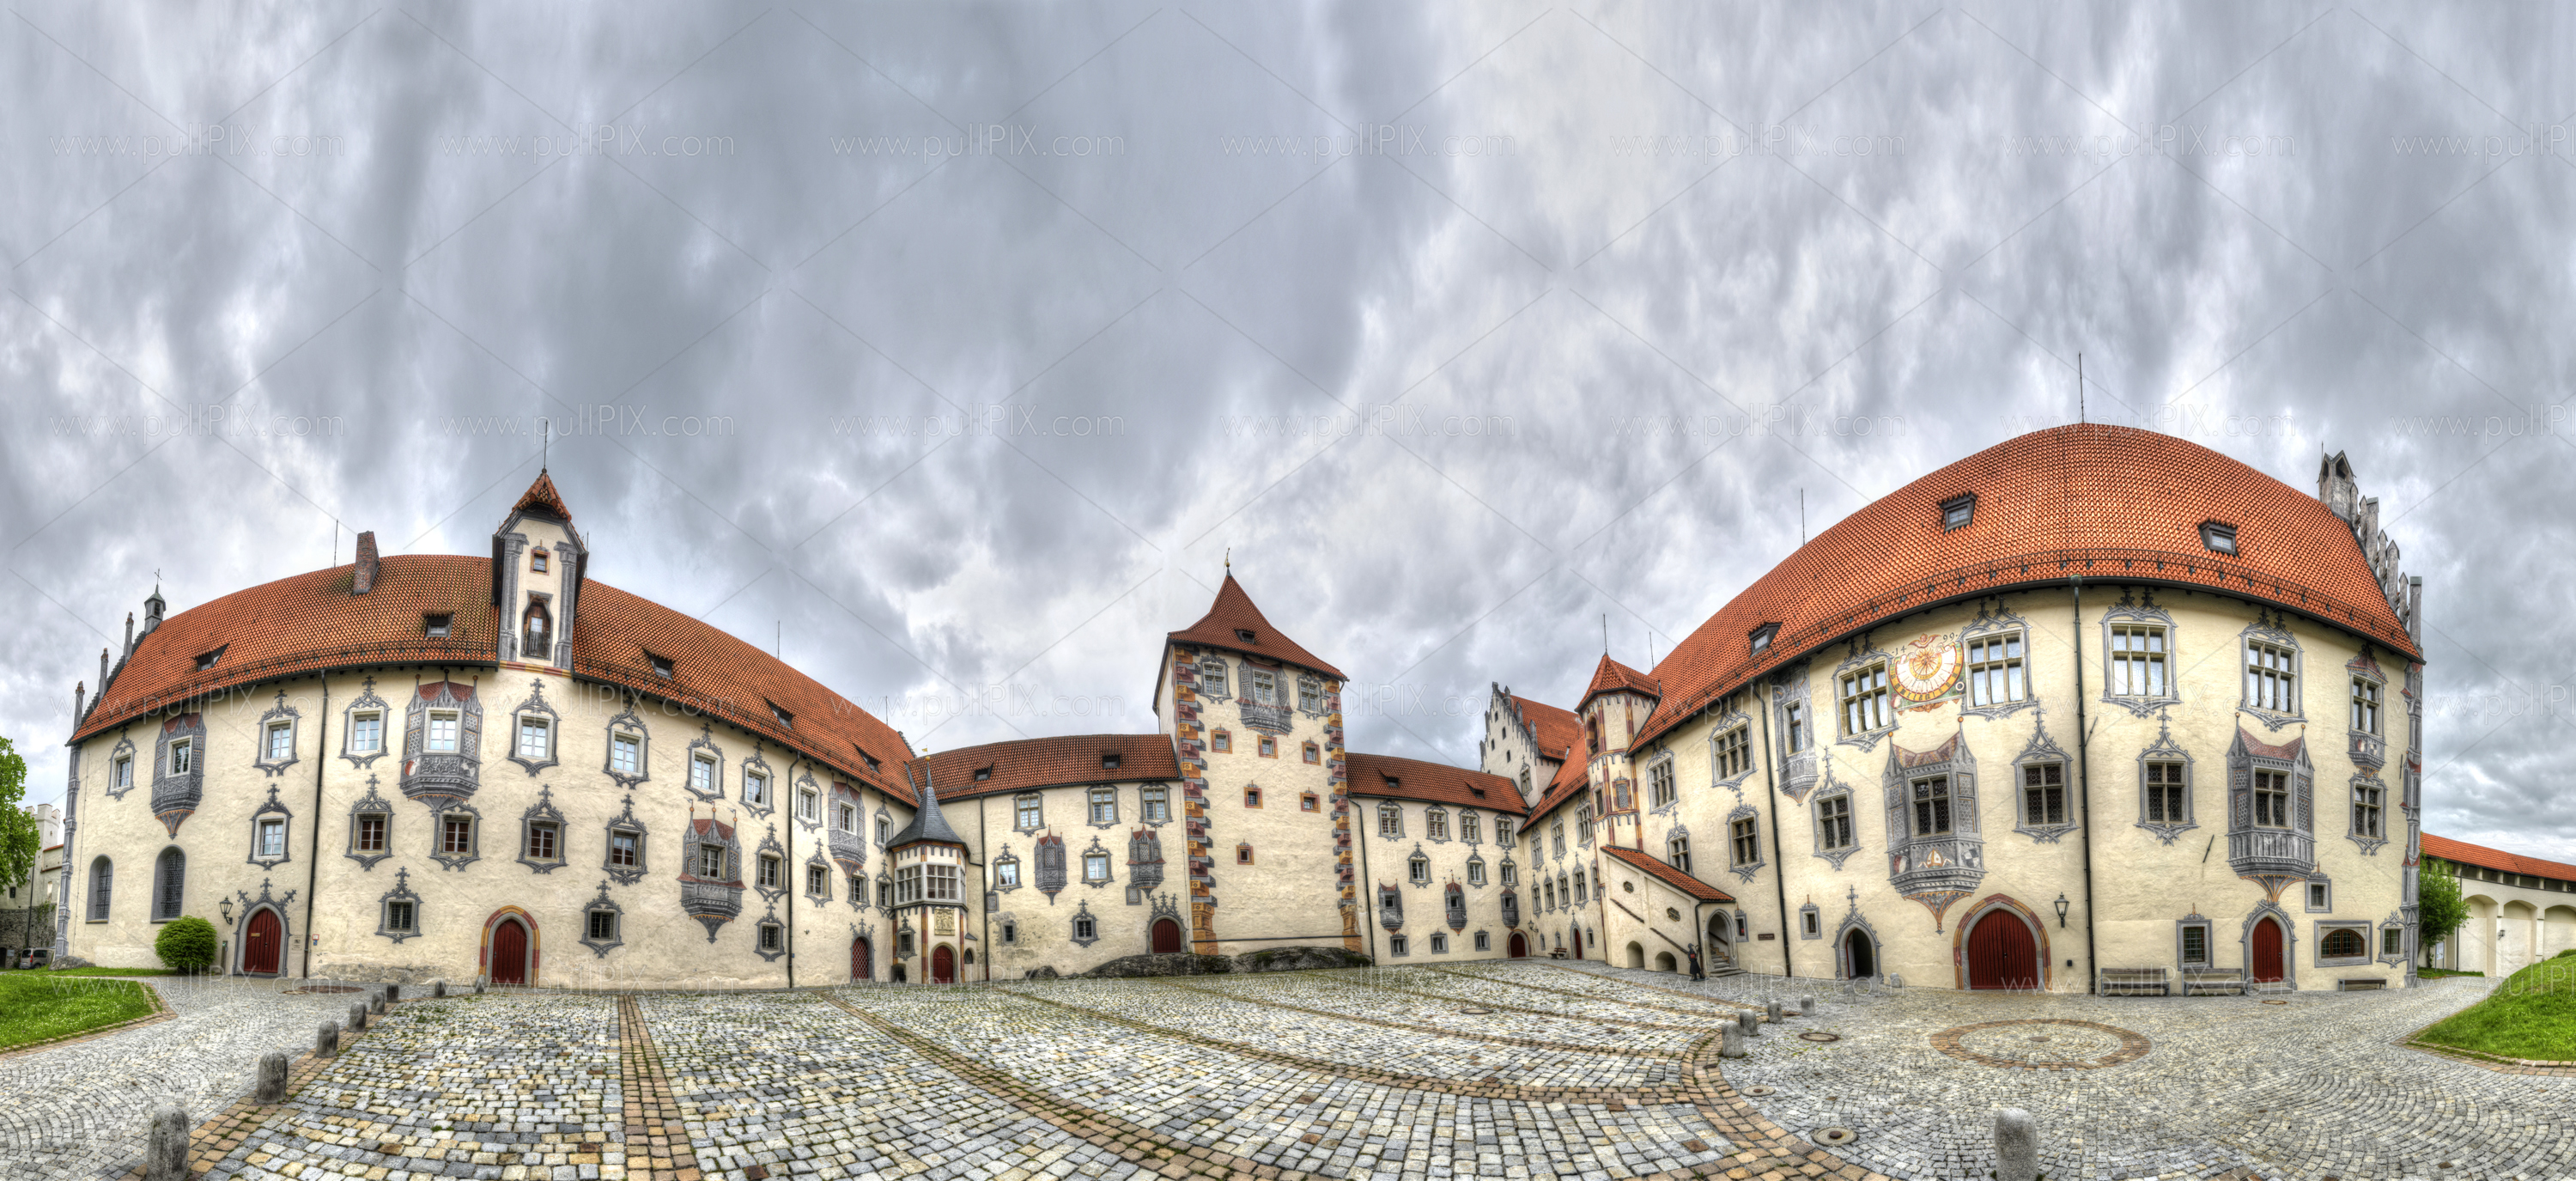 Preview Hohes Schloss Fuessen HDR.jpg